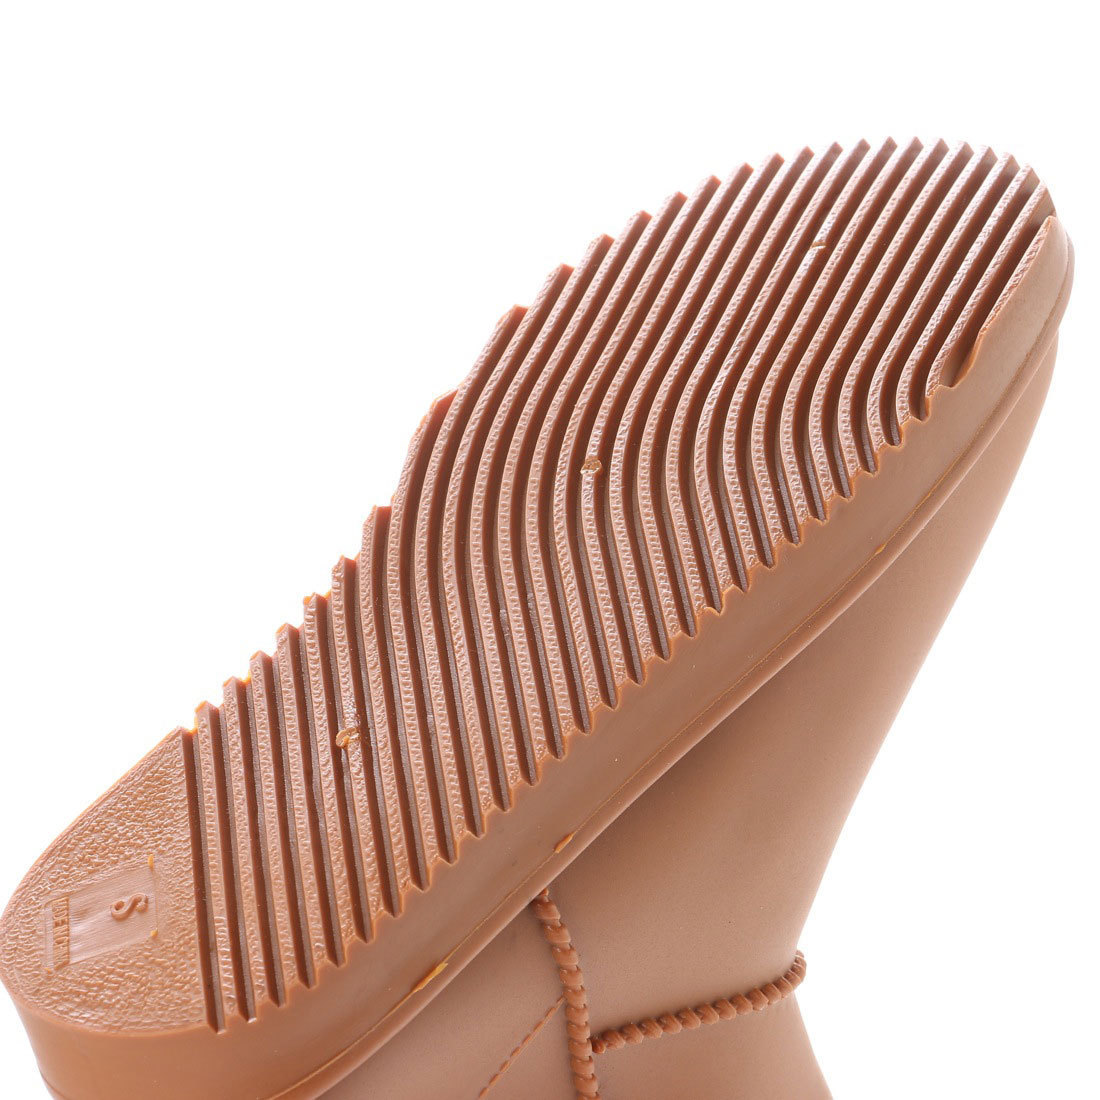 16604 アウトレット レインブーツ Sサイズ (22.0-22.5cm) ブラウン レディース 婦人靴 16604